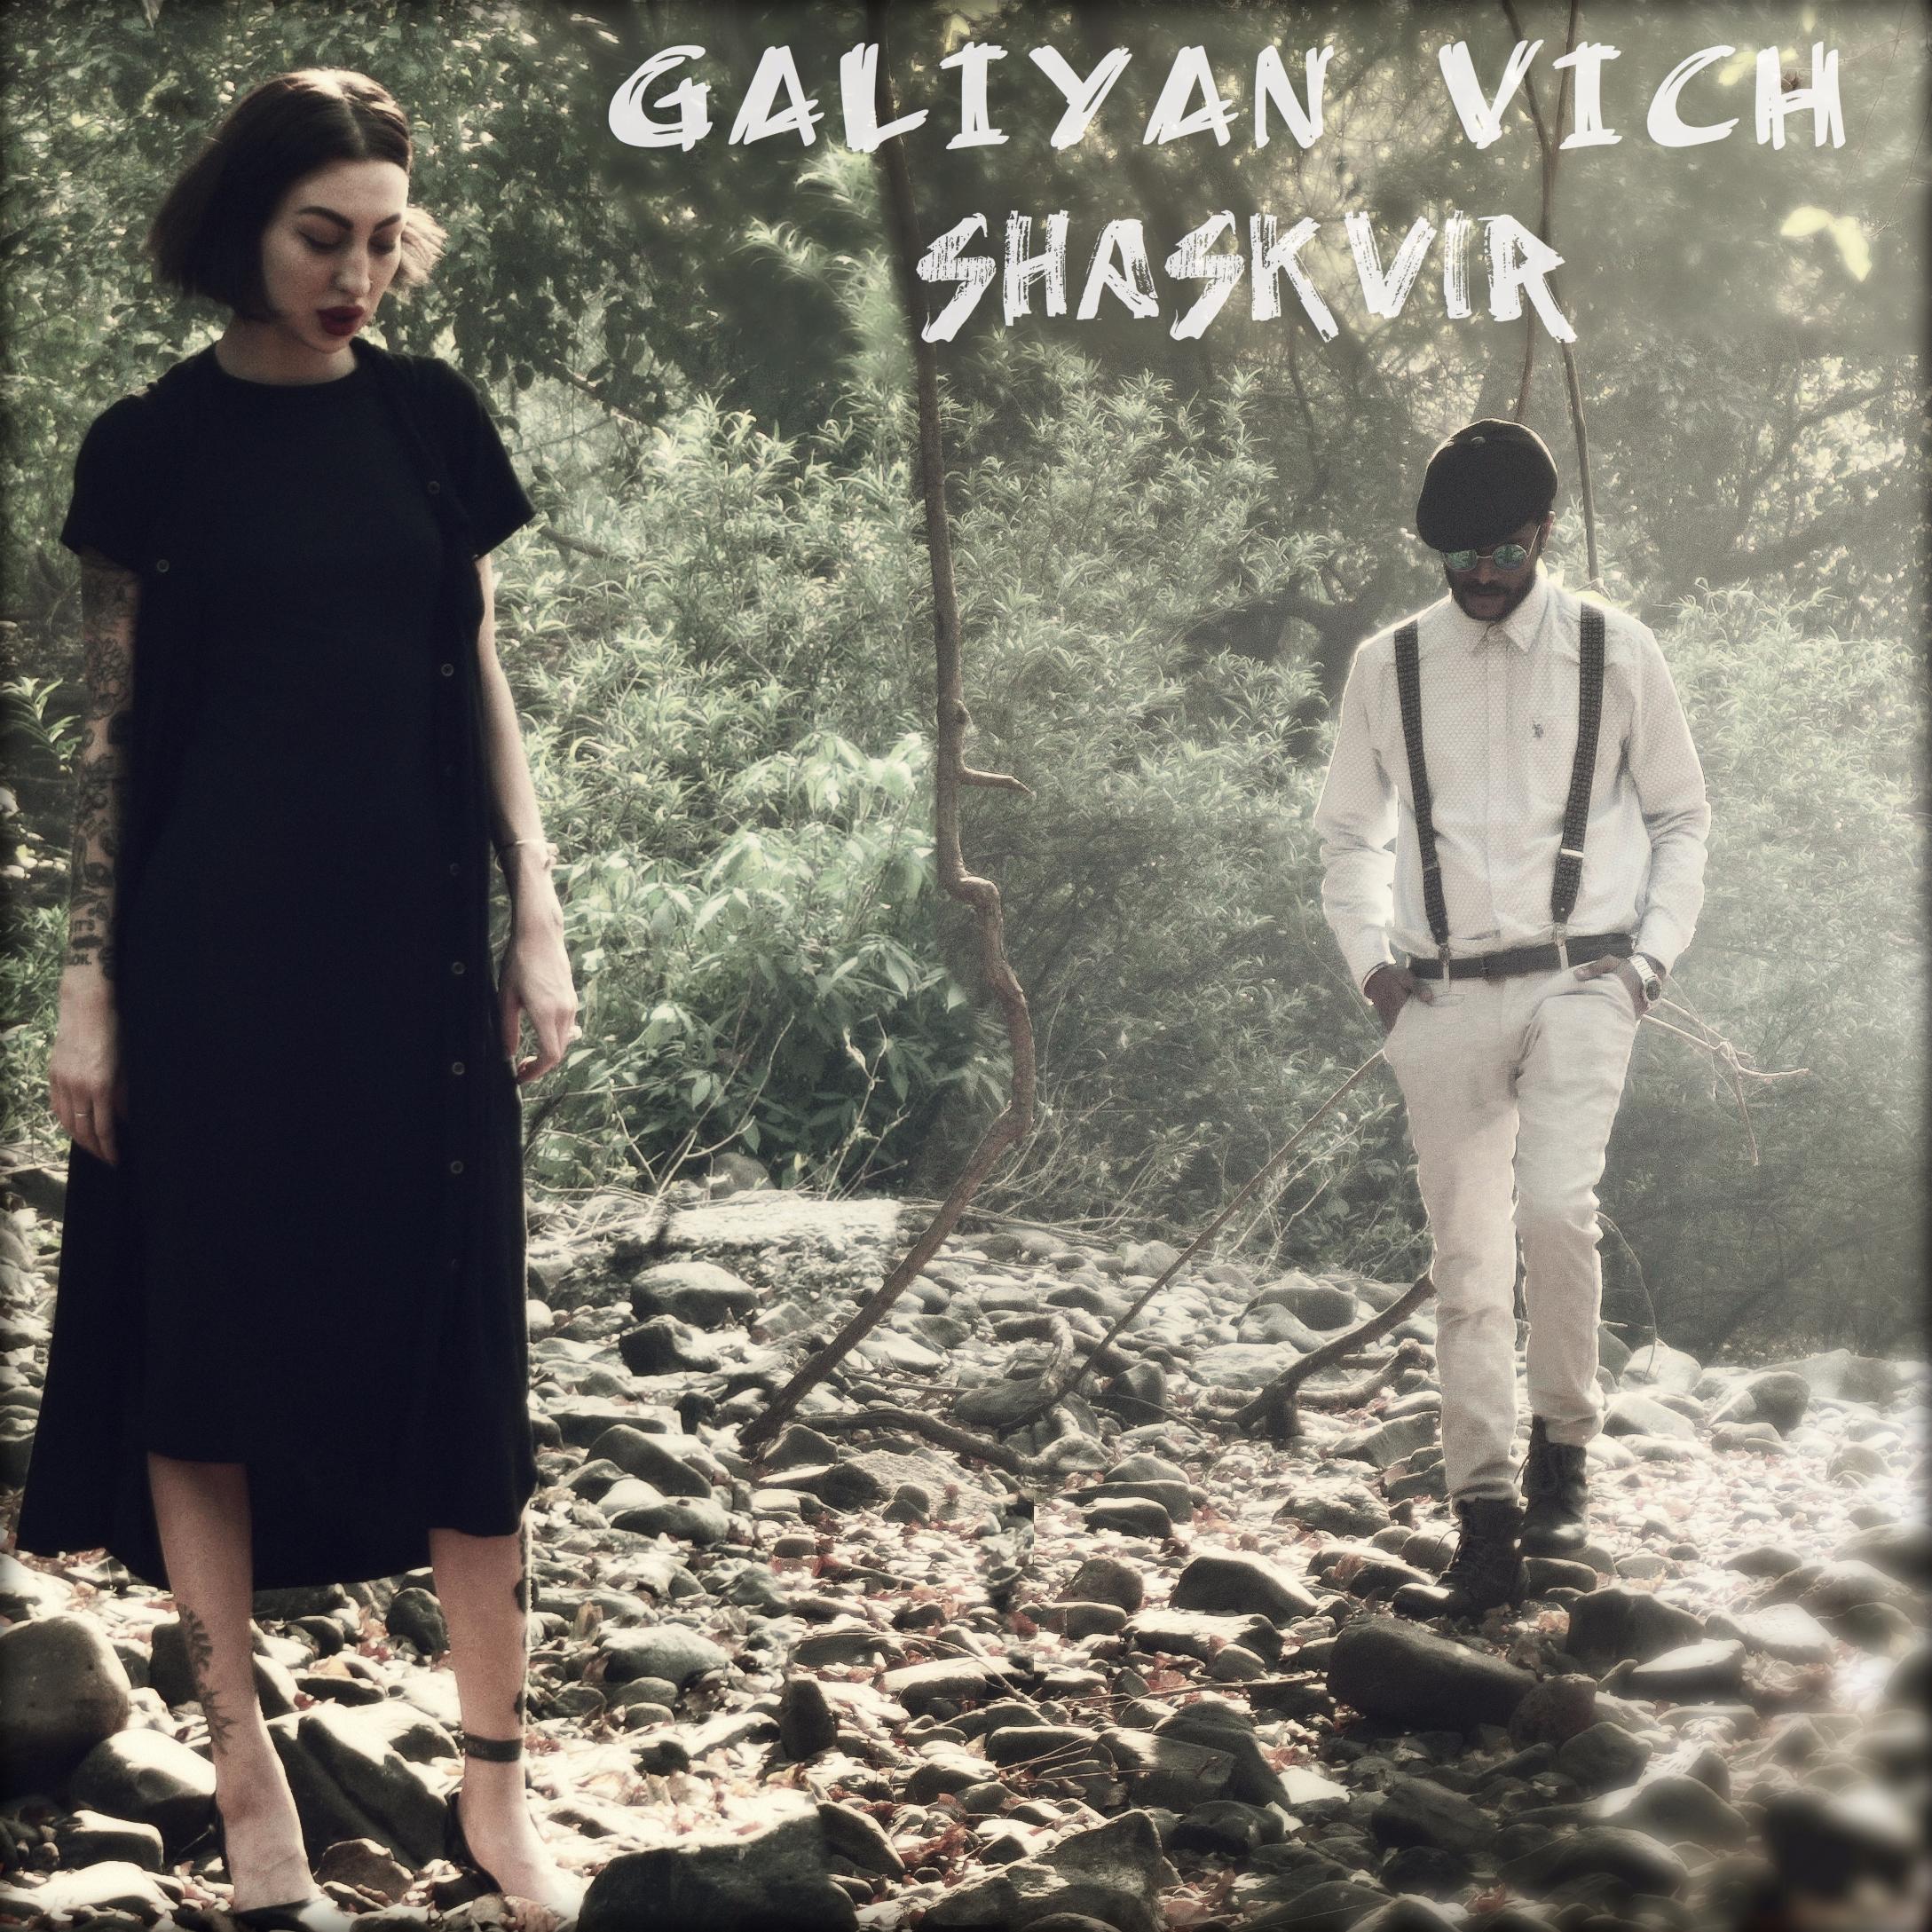 Galiyan vich - Shaskvir